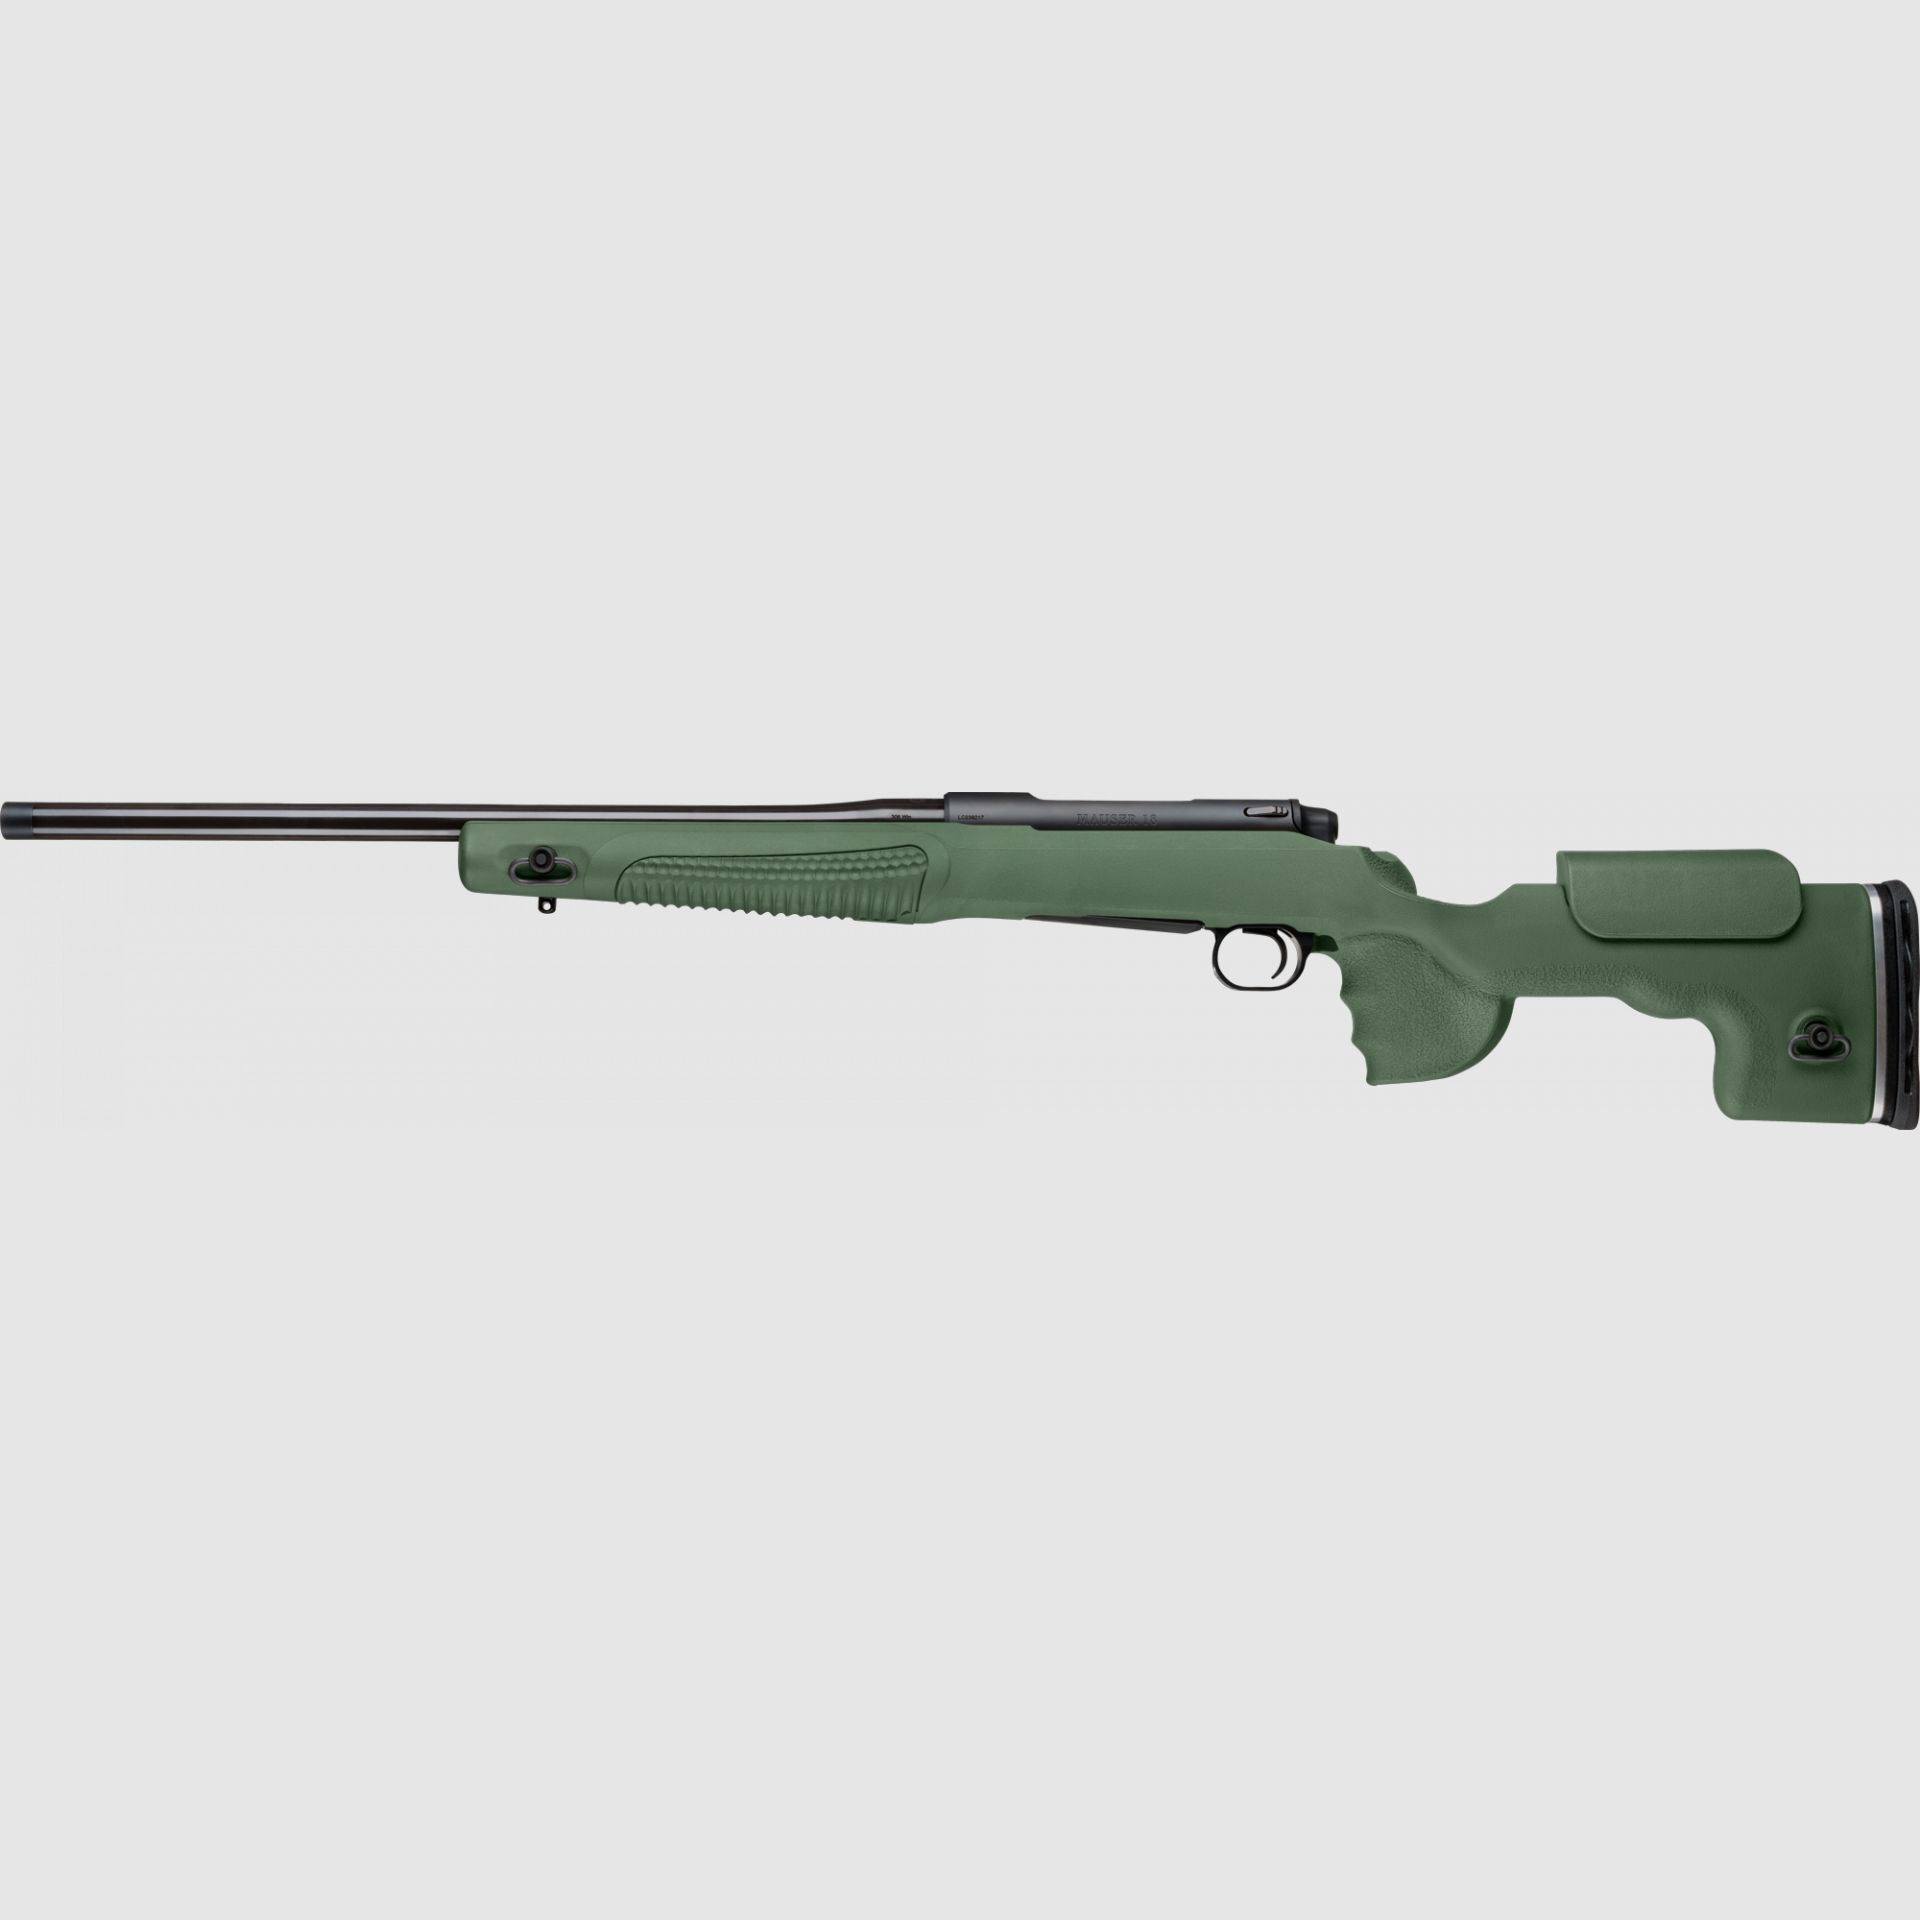 Mauser M18 Fenris - Mündungsgewinde Repetierbüchse